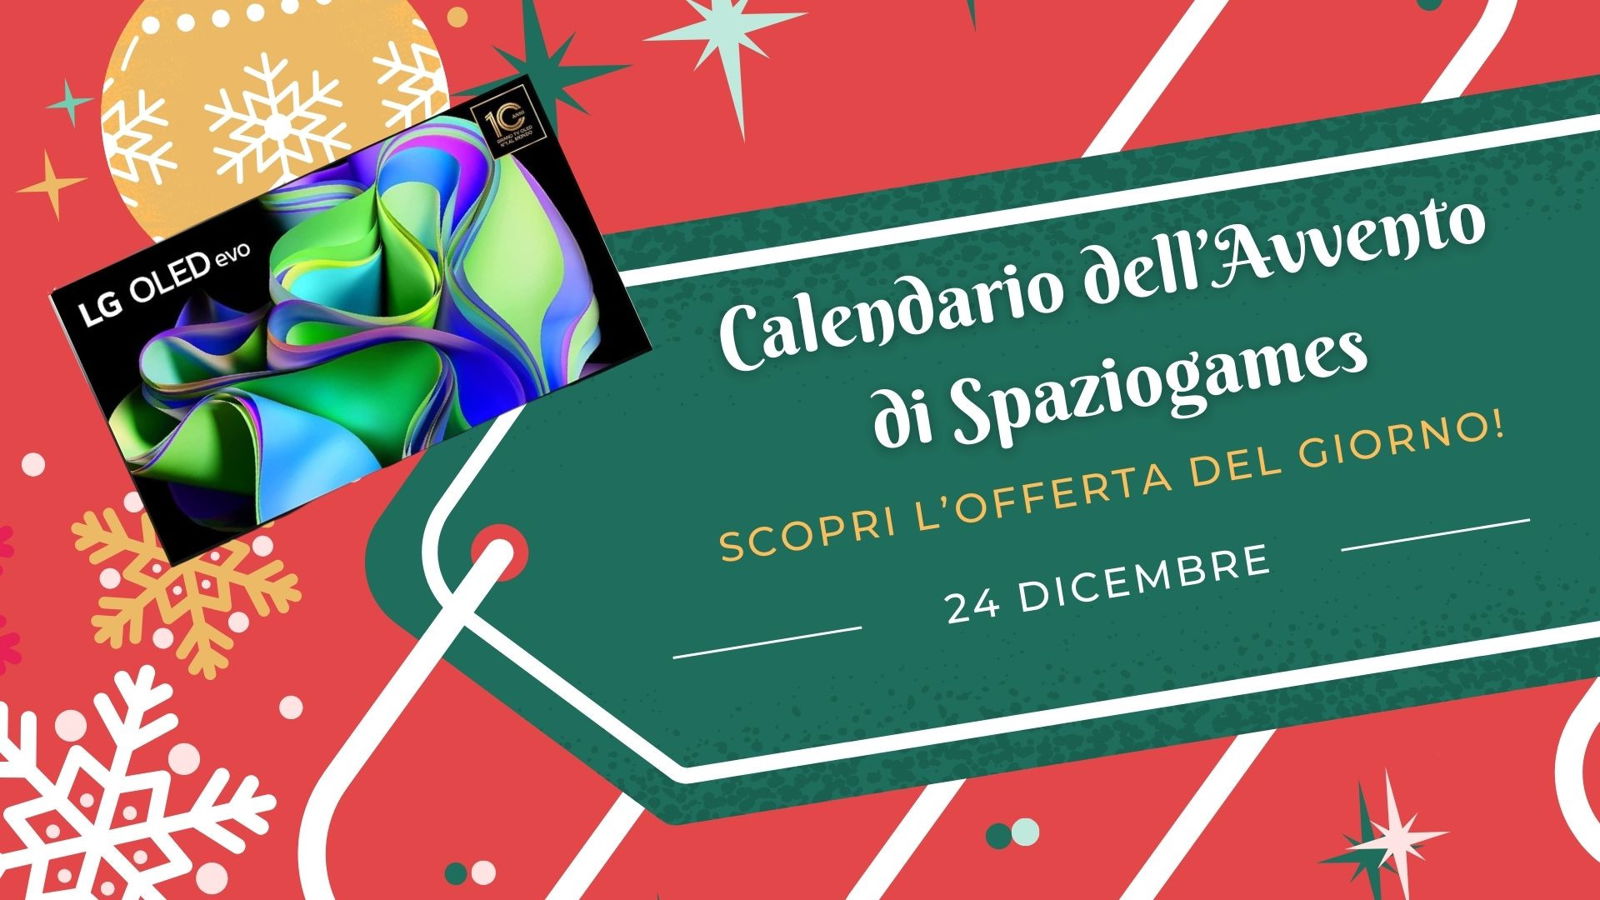 Calendario dell'avvento di Spaziogames: scopri l'offerta del 24 dicembre -  SpazioGames